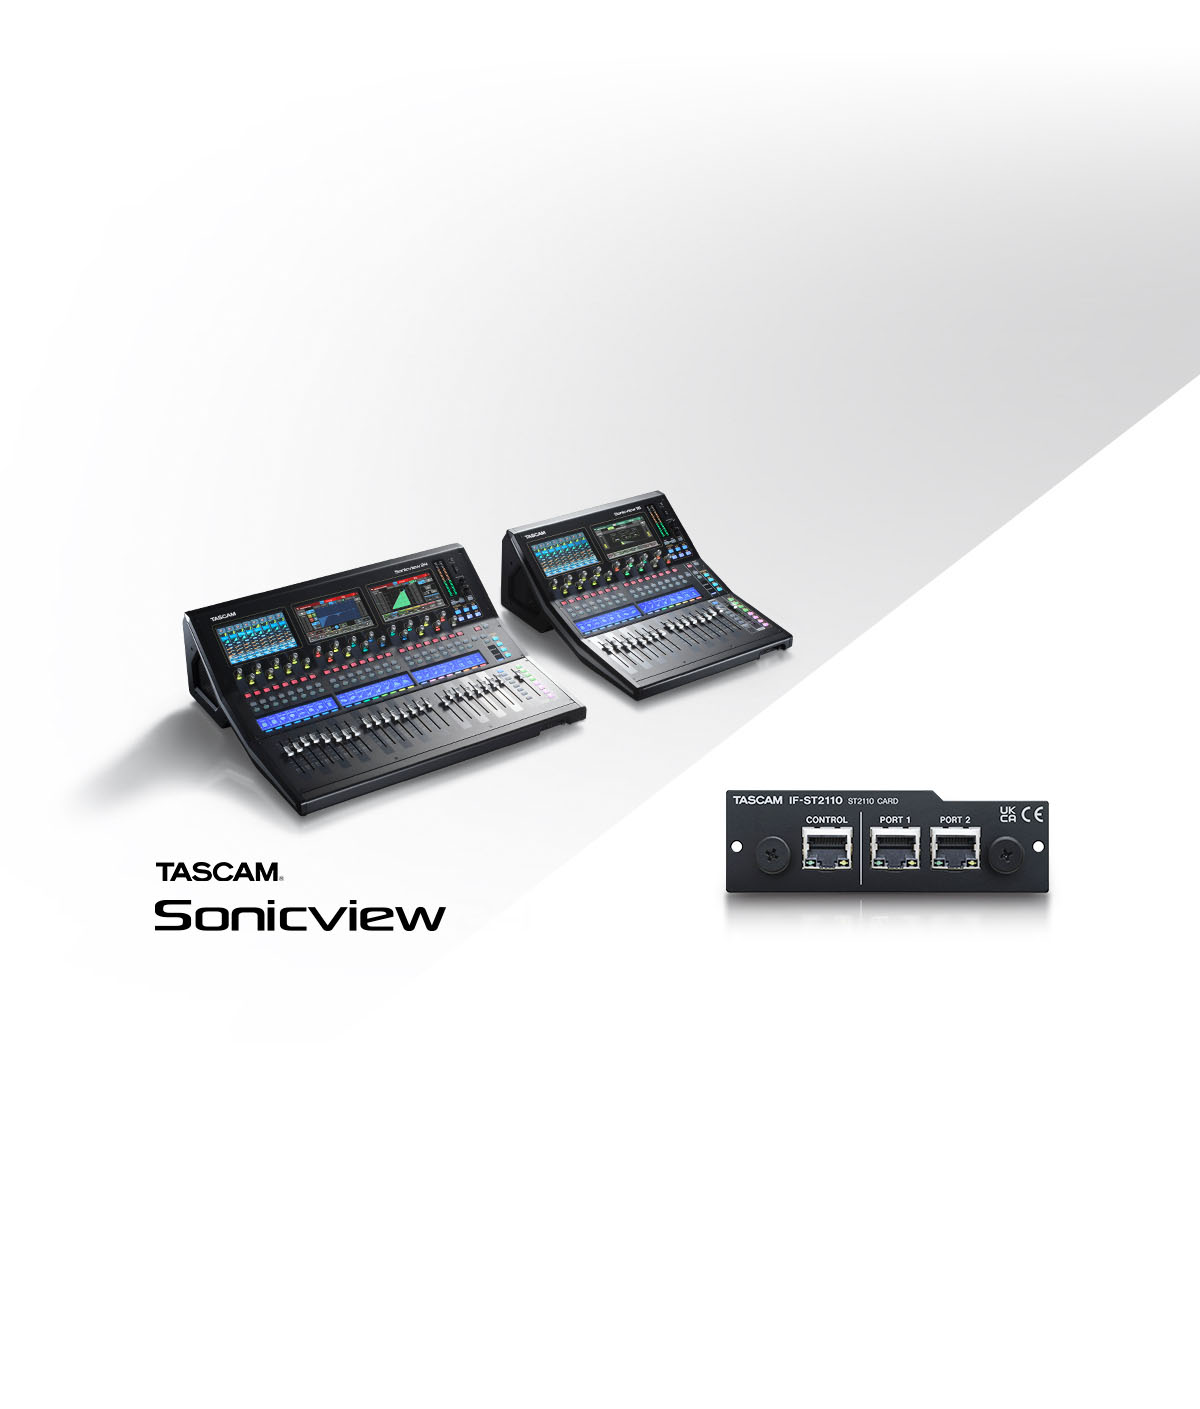 業務用デジタルミキサー『TASCAM Sonicviewシリーズ』の SMPTE ST 2110準拠オプションカード『IF-ST2110』を9月下旬に発売